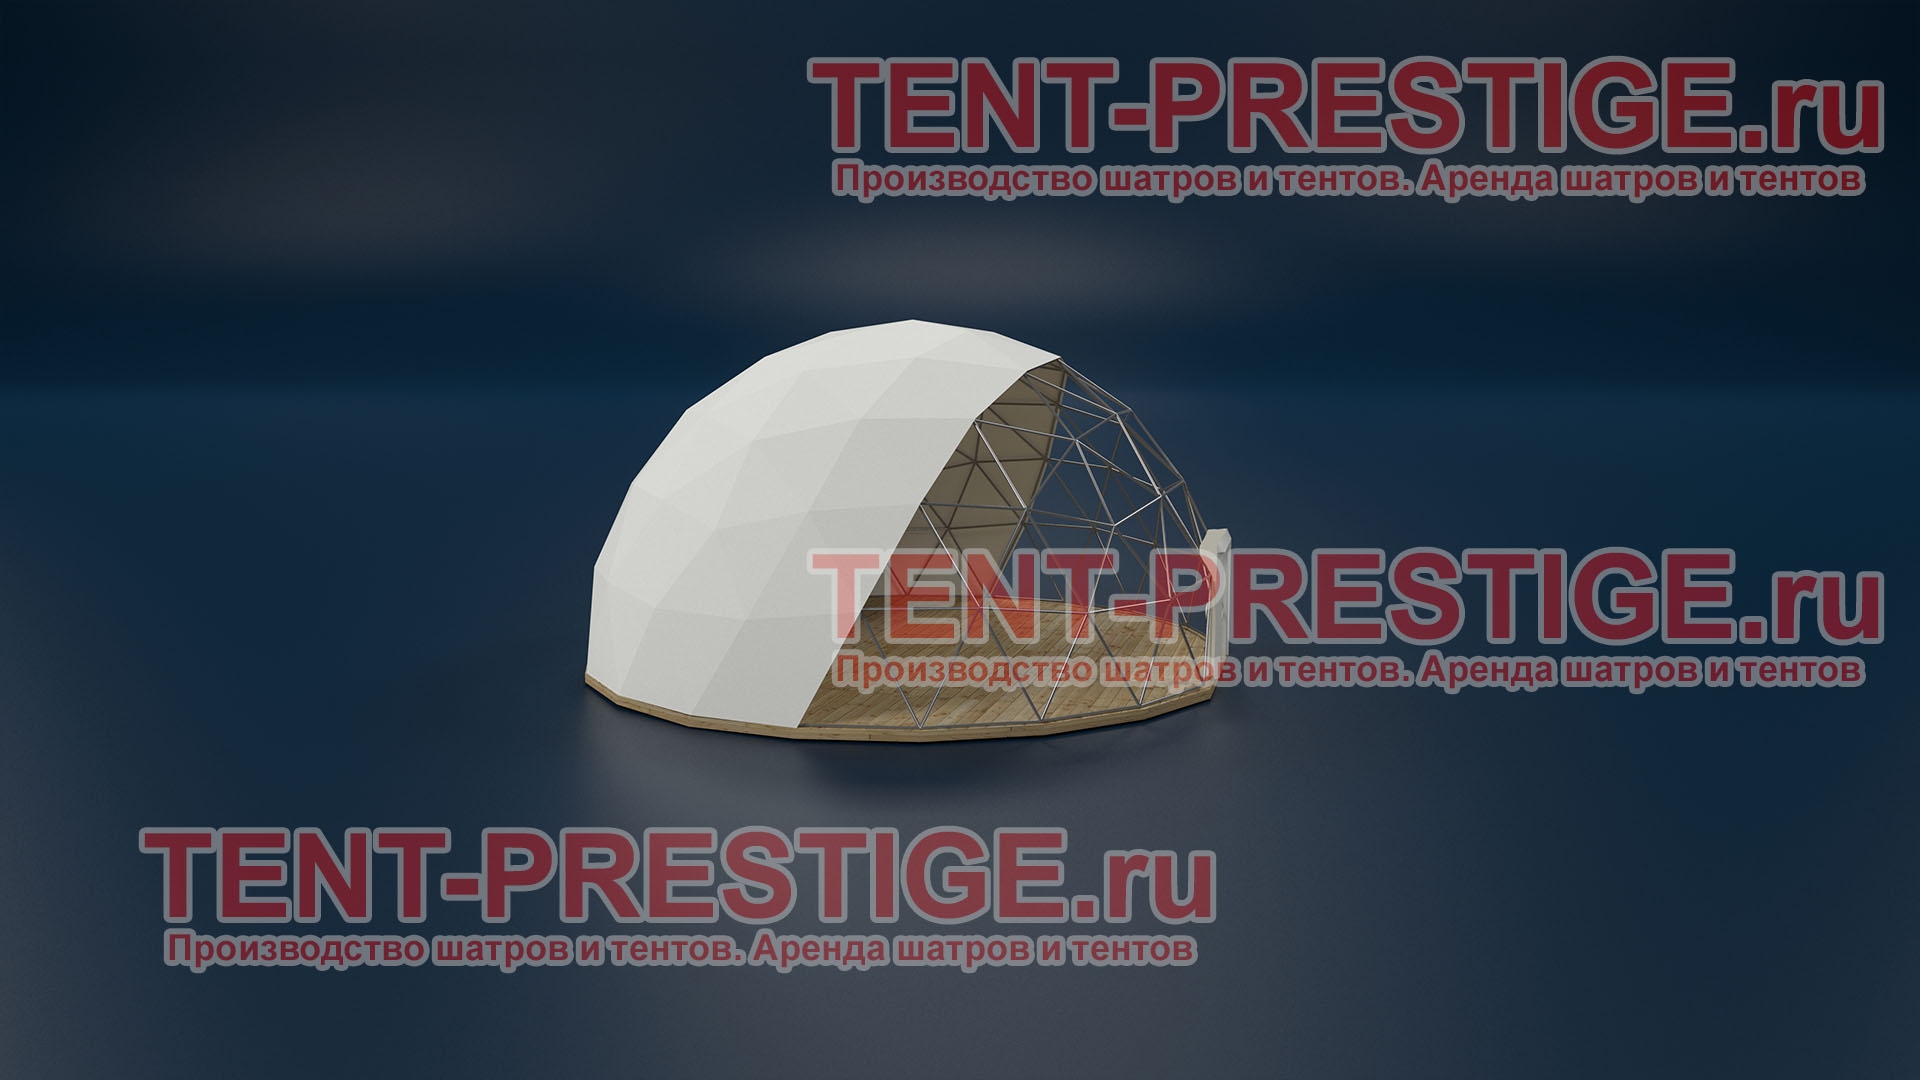 В аренду - Сферический шатер (Сфера) 10м полупрозрачный